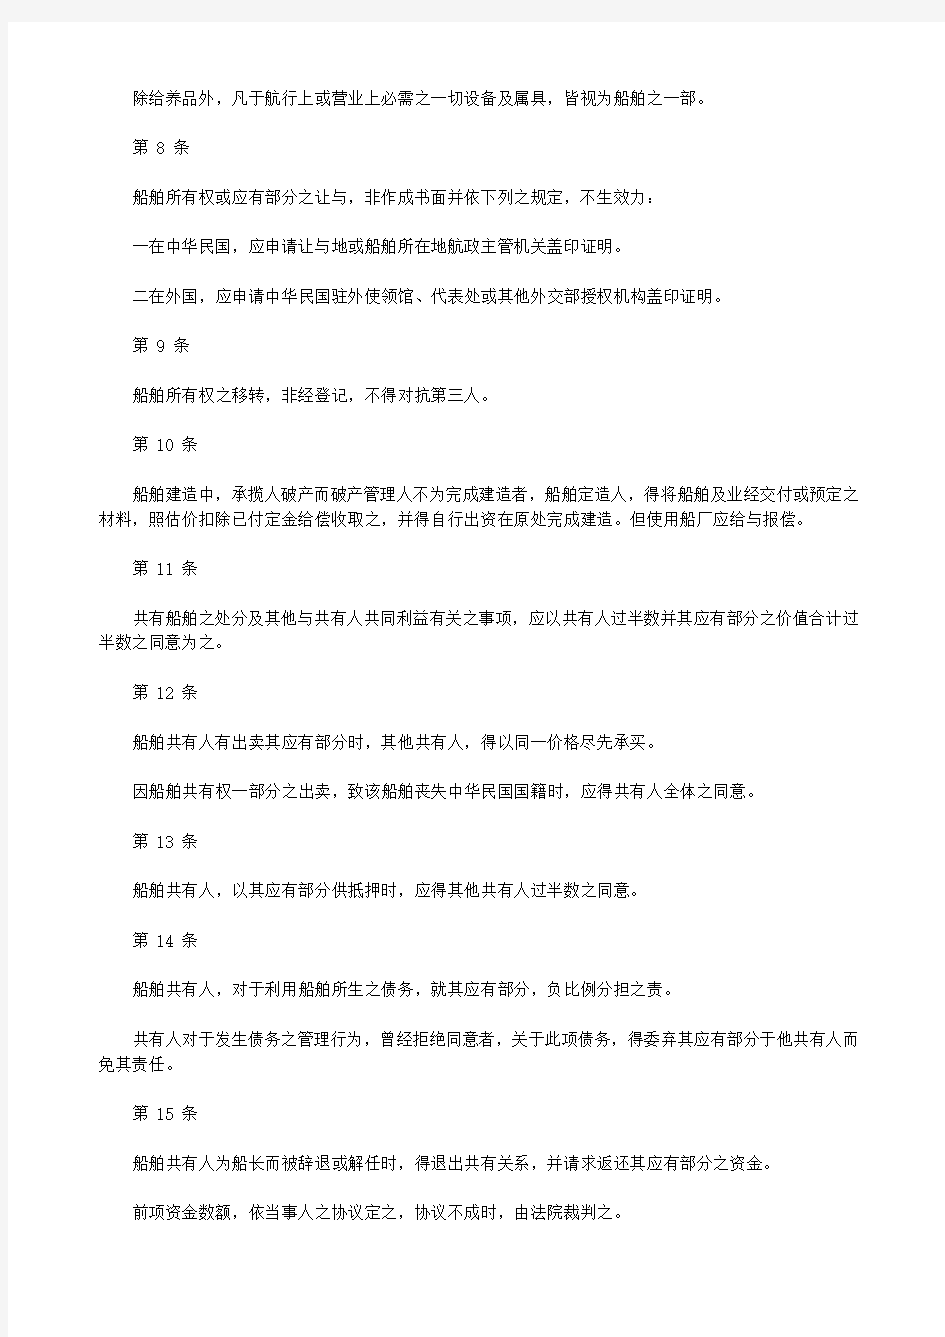 中华人民共和国海商法 解释